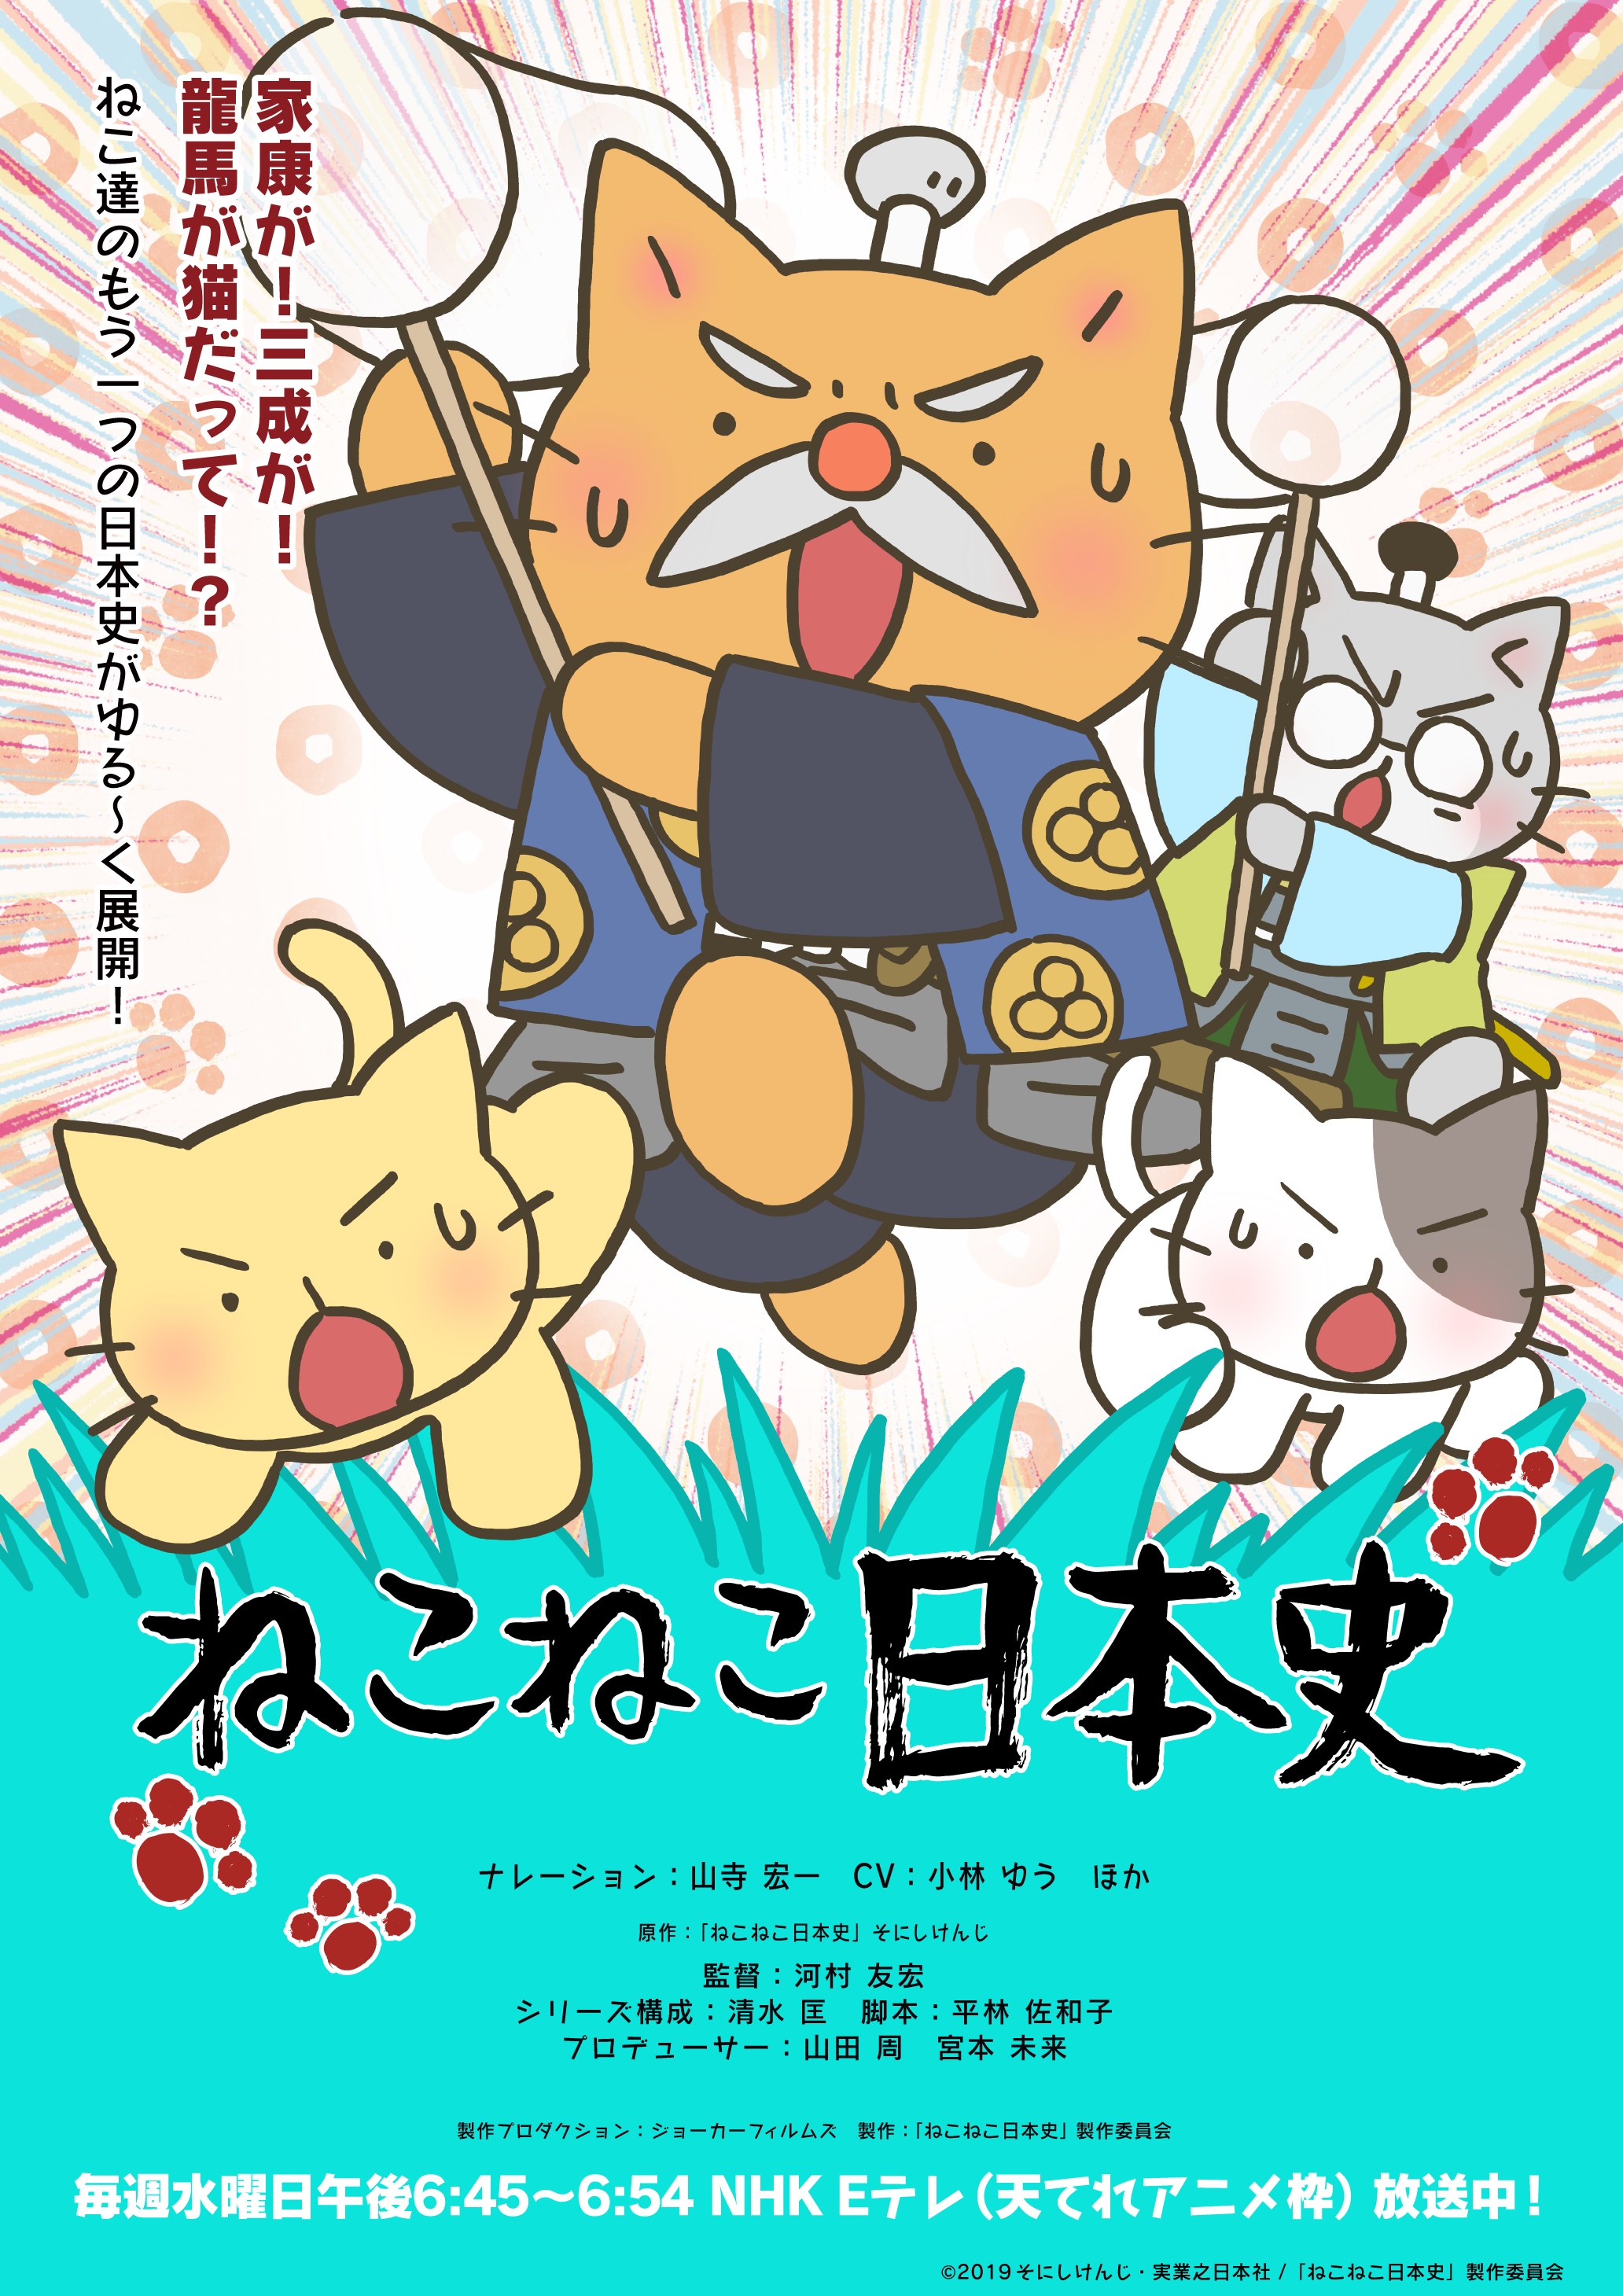 アニメ ねこねこ日本史 第4期後半エンディングテーマのアーティストがむぎ 猫 に決定 オープニング テーマは前回に引き続きelfin が担当 株式会社アニプレックスのプレスリリース